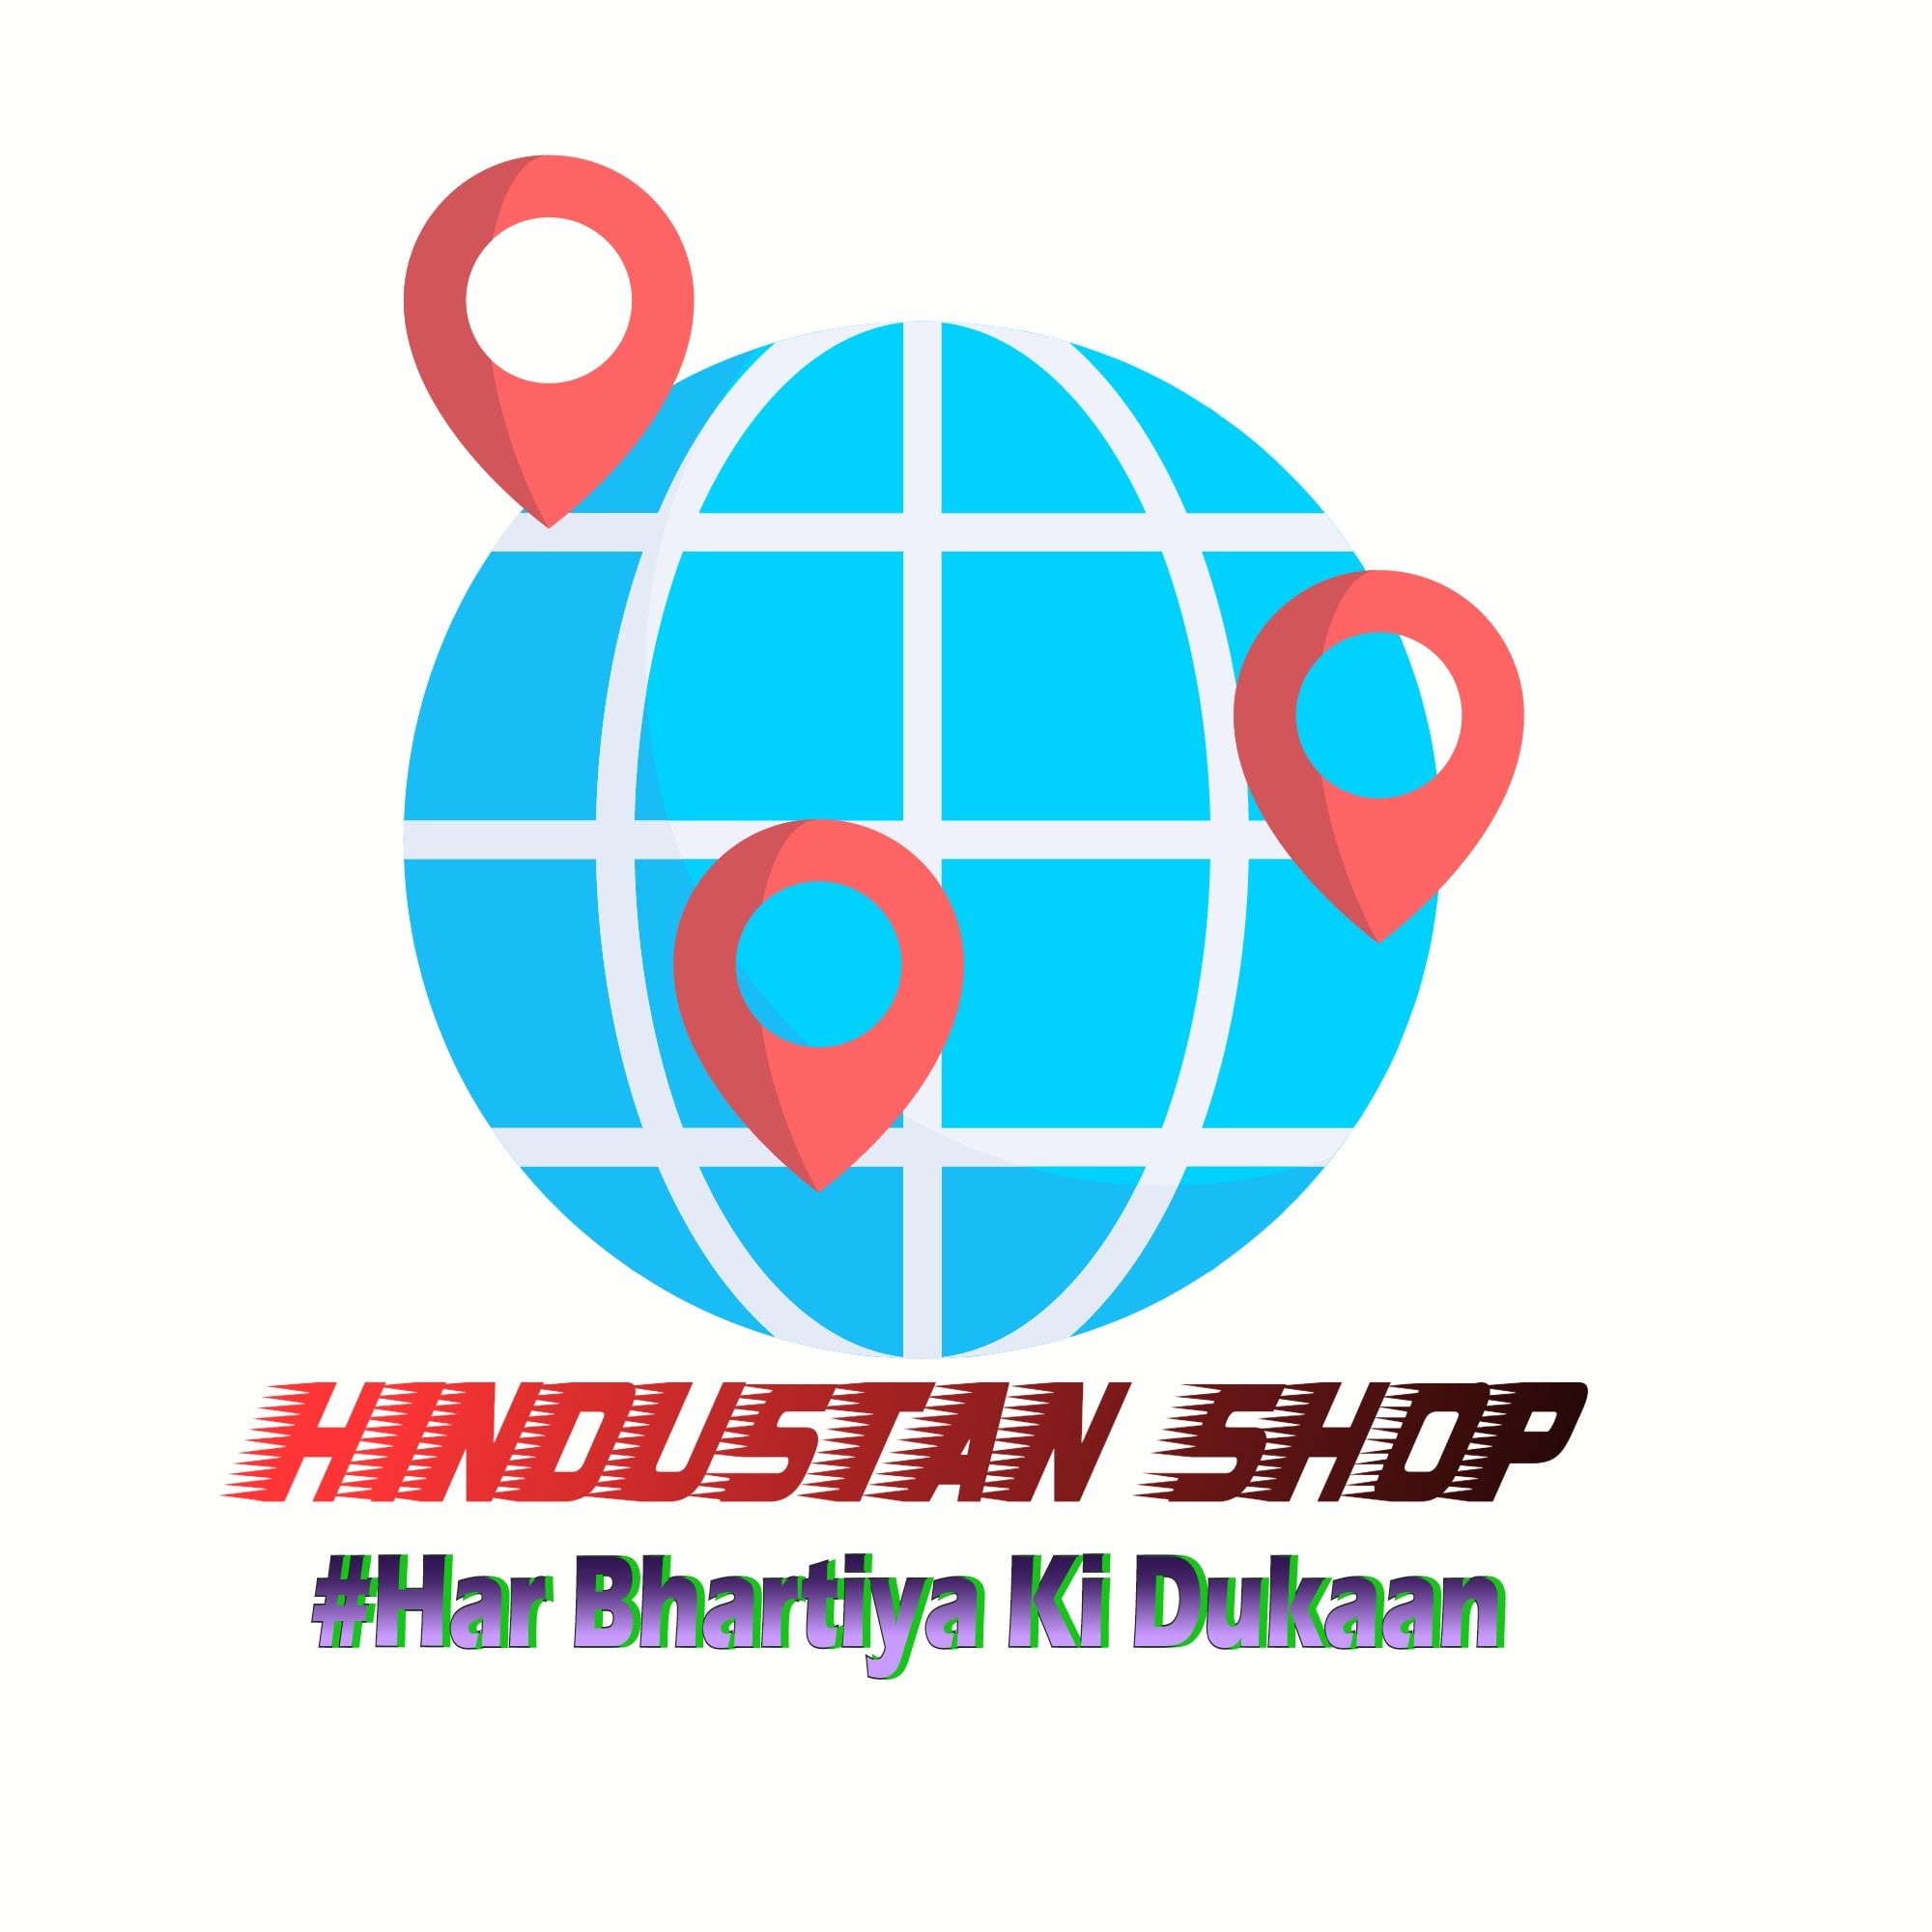 Hindustan Shop